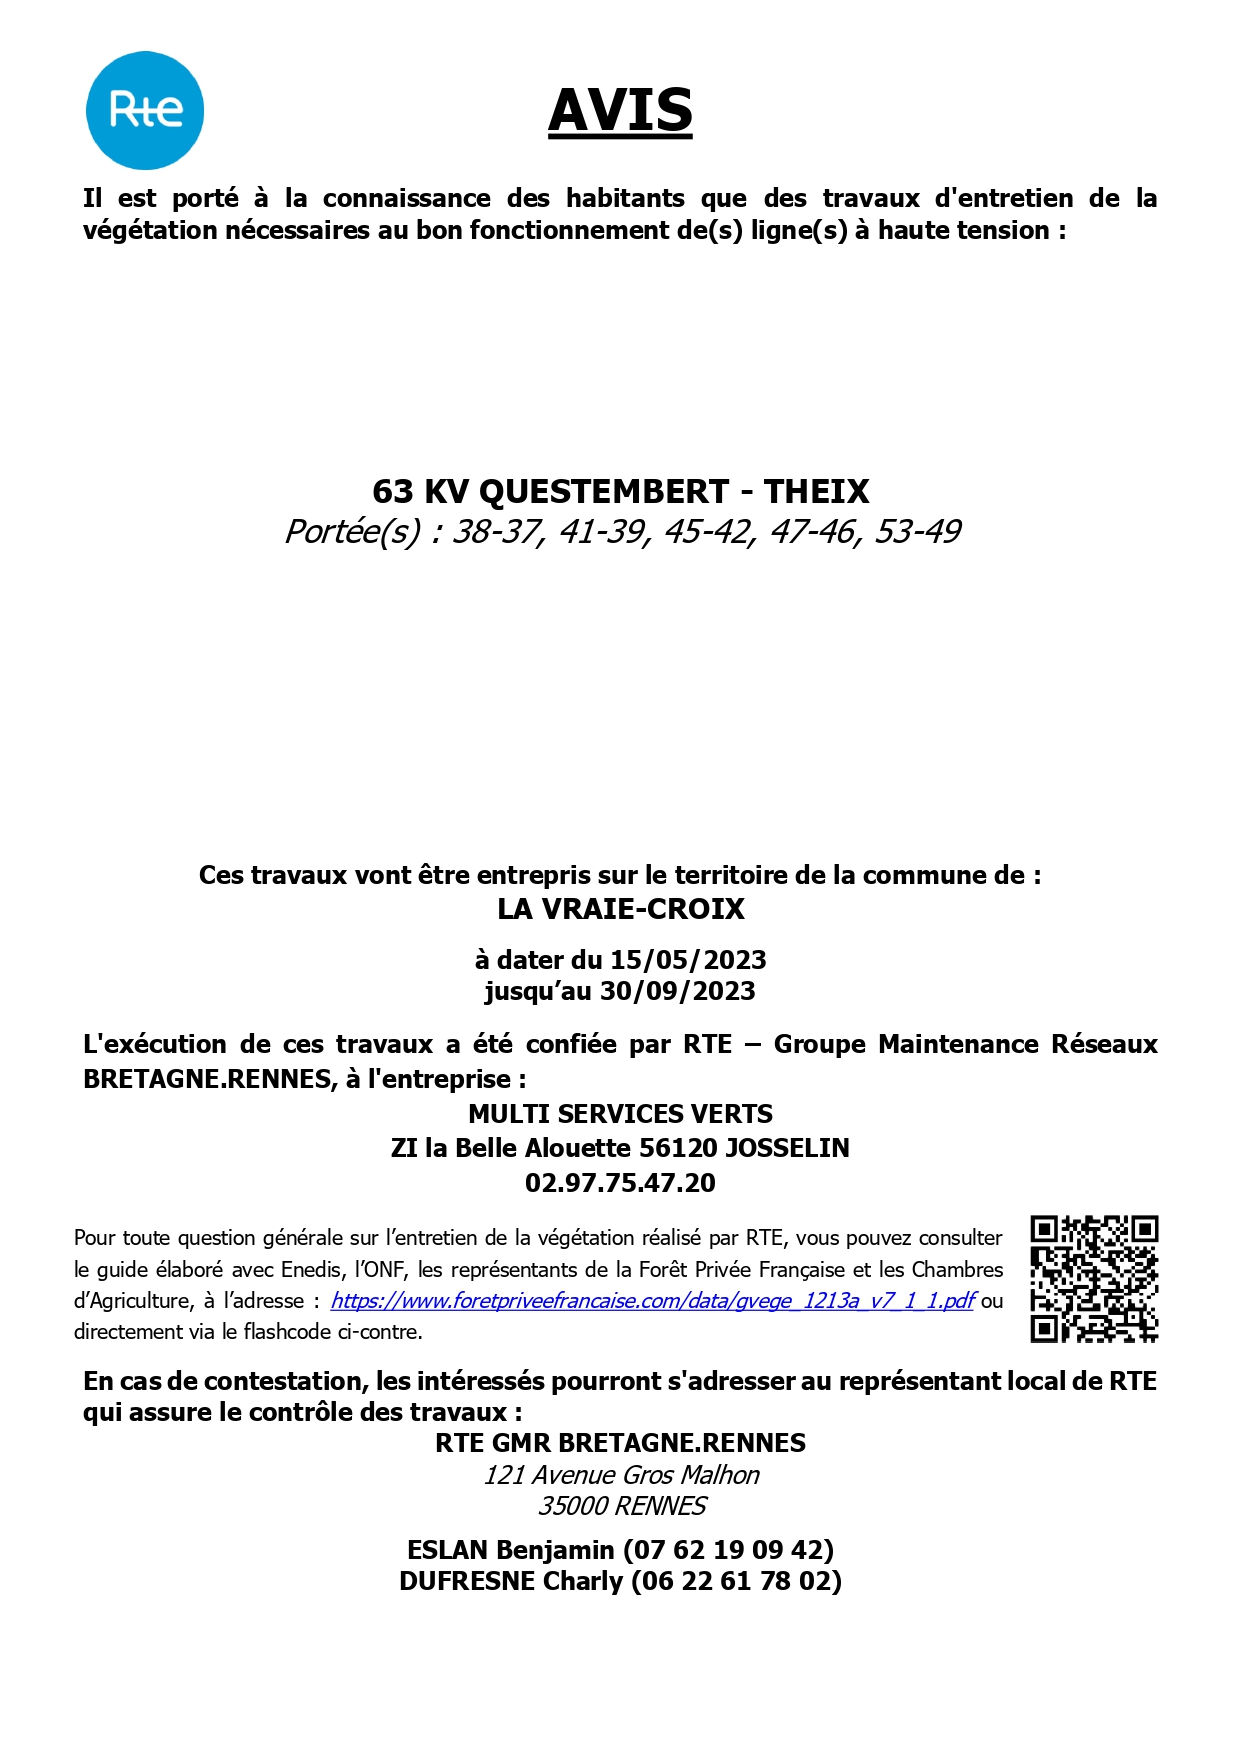 Affiche La Vraie Croix 15 05 23 072120 page 0001